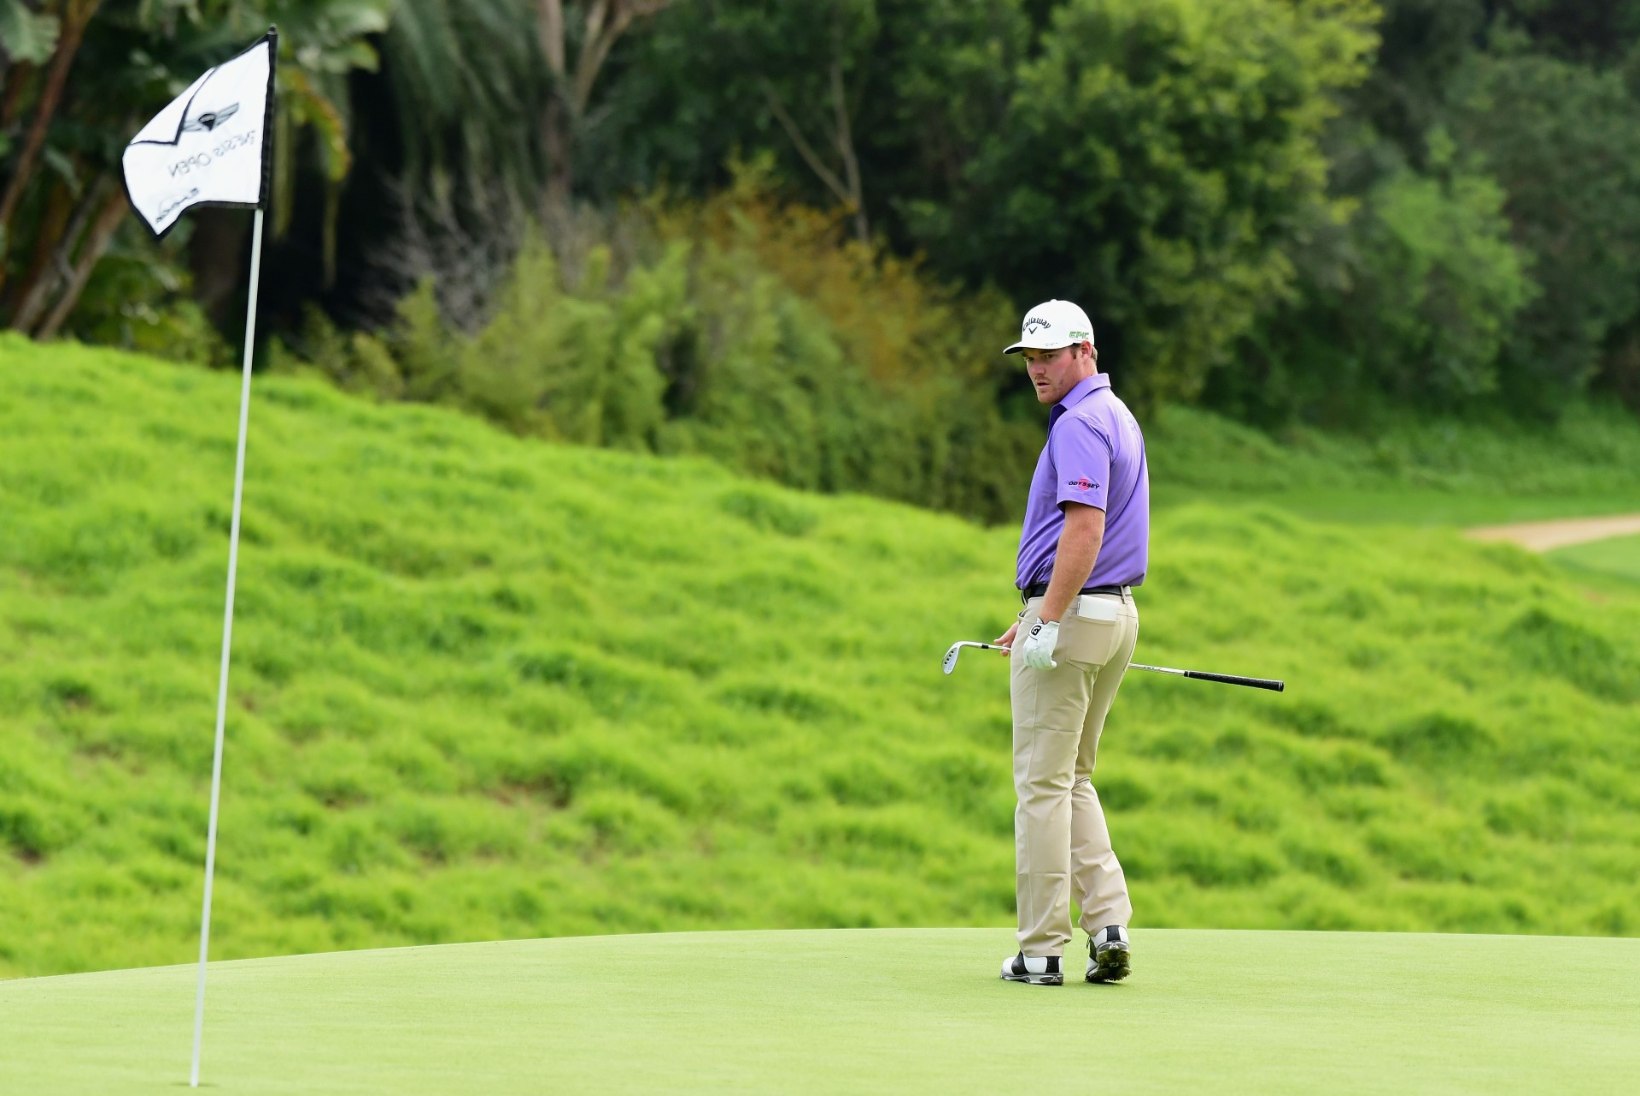 KUUMAD FOTOD | Ameerika profimängija kutsub Mastersile üliseksika caddie - kas ta üldse suudab siis golfile keskenduda?